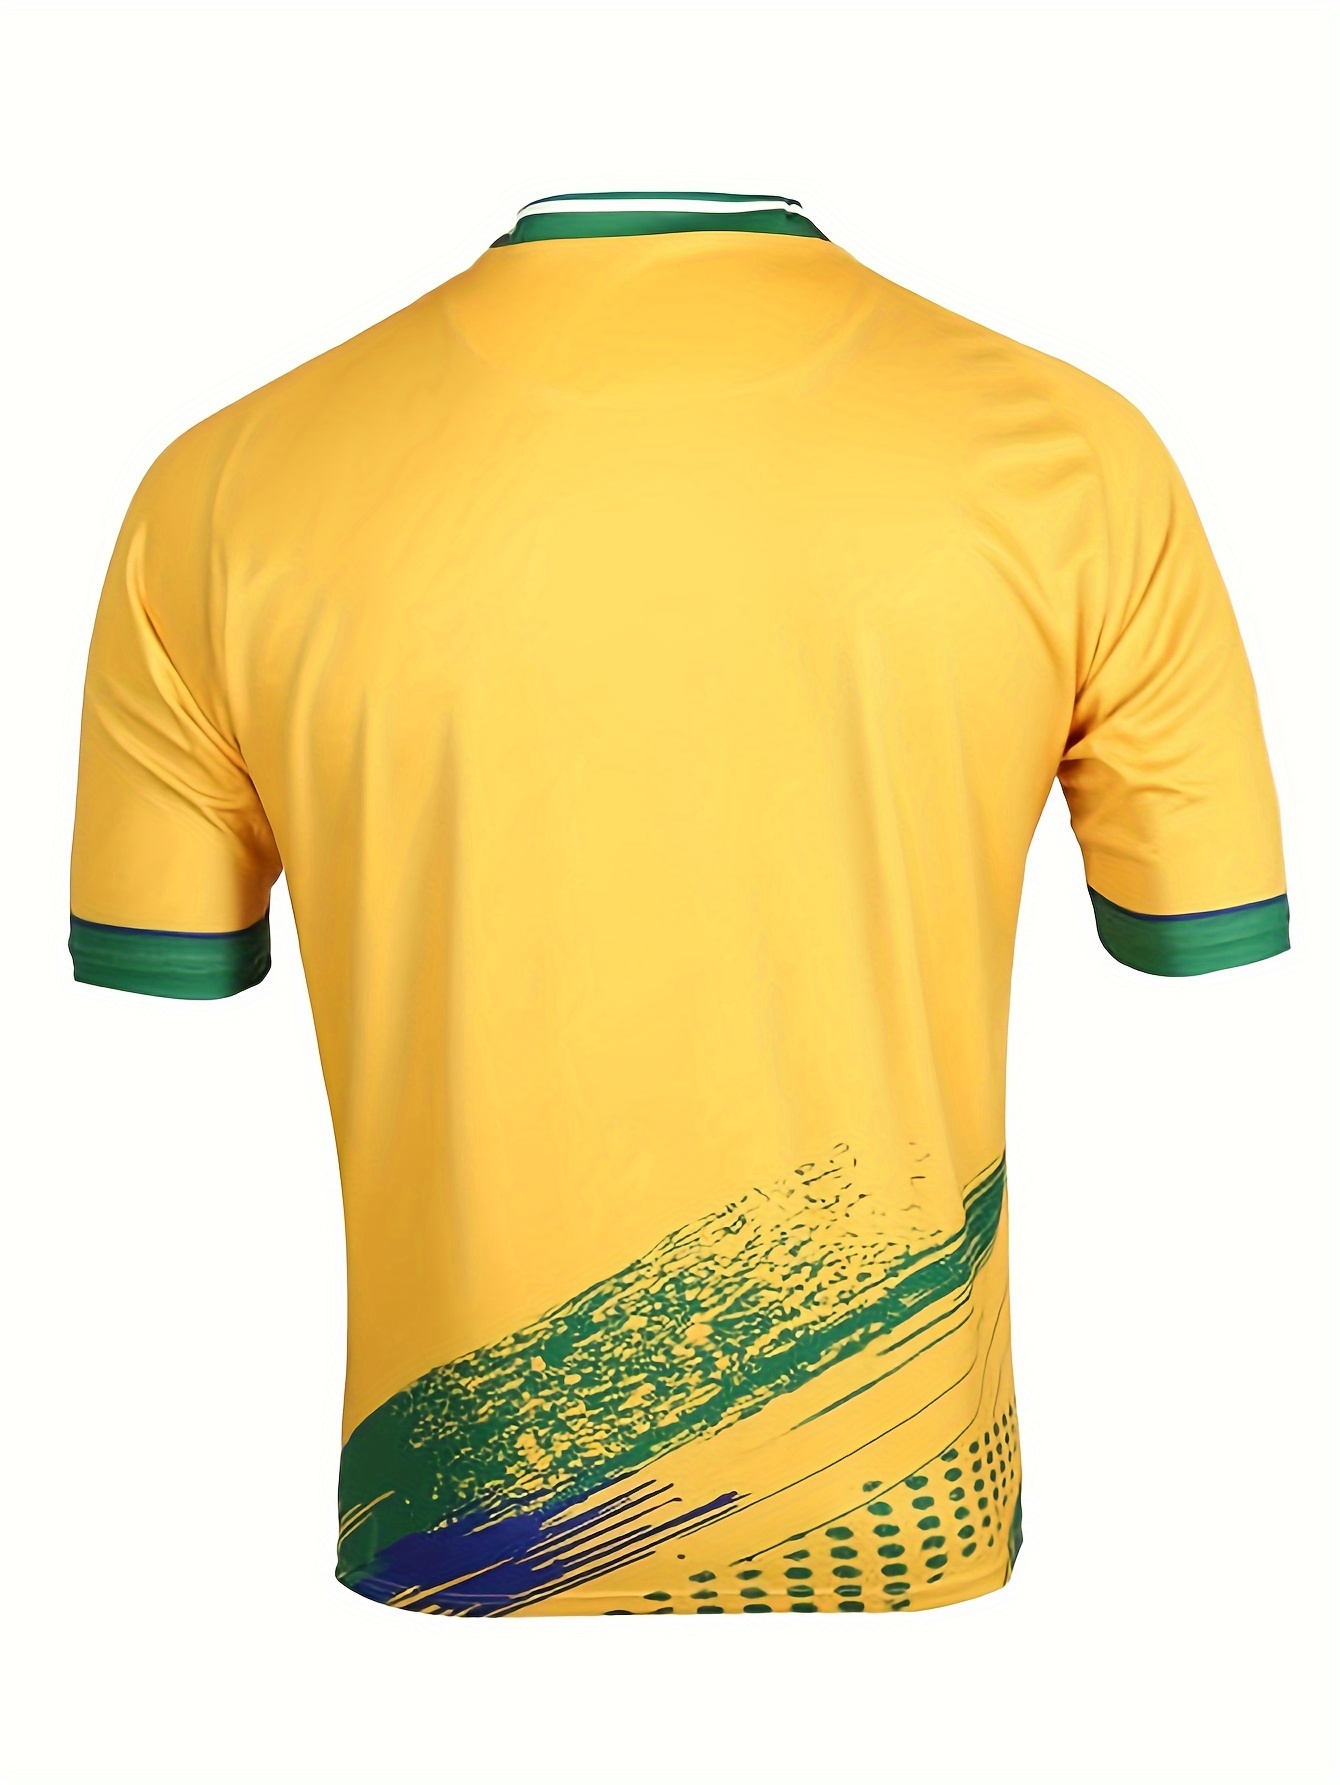 Fotbollströja - Gul/Brasilien - BARN